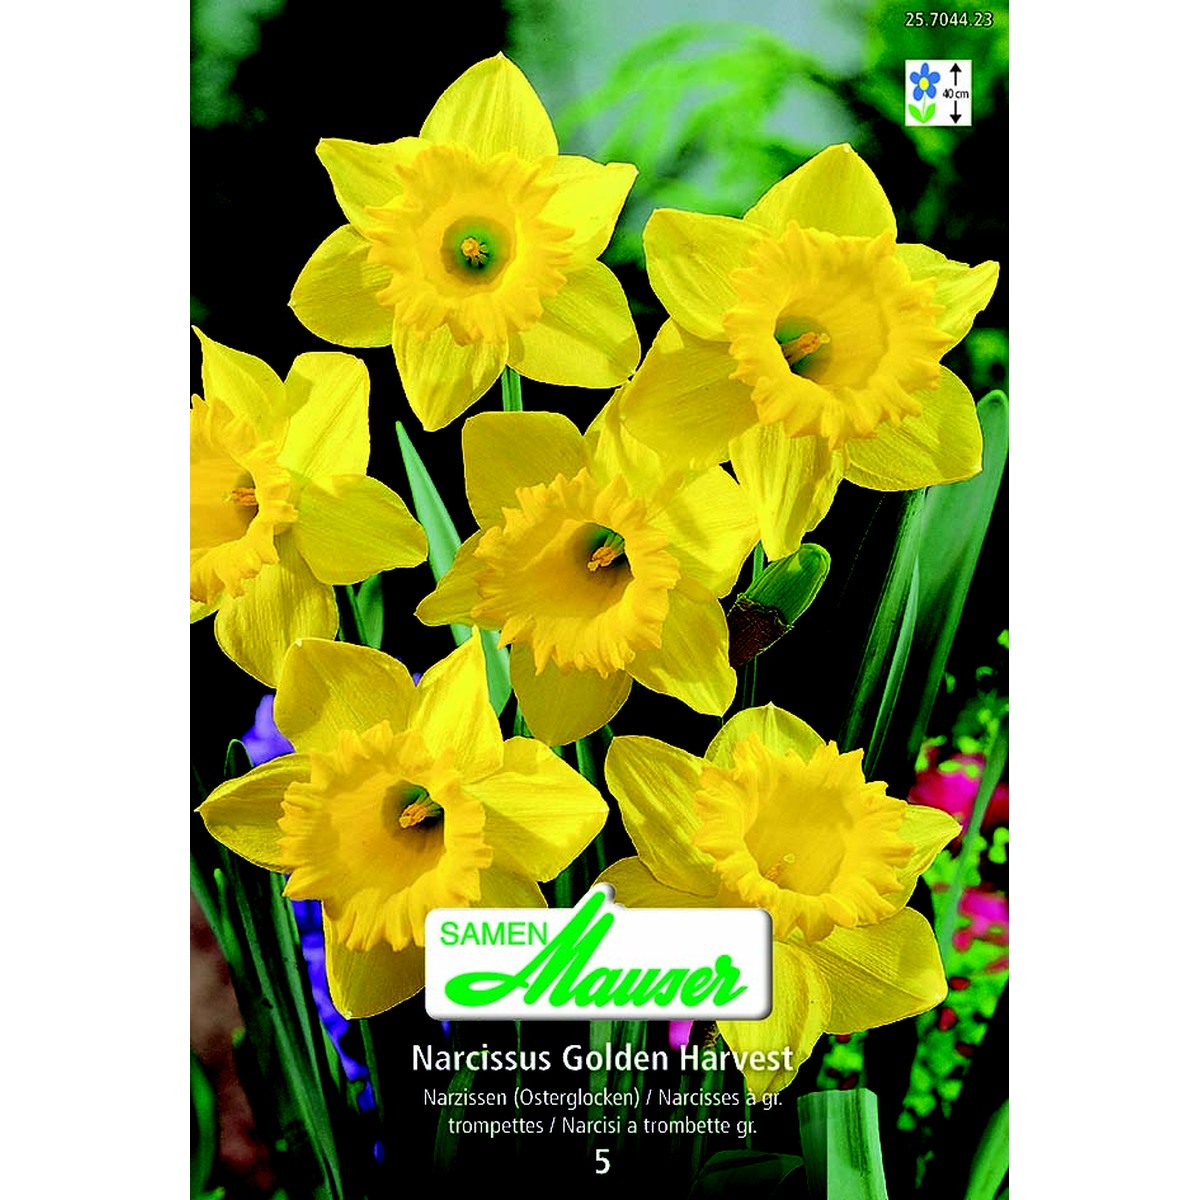   Narcisse- NT Gold Harvest 5  14/